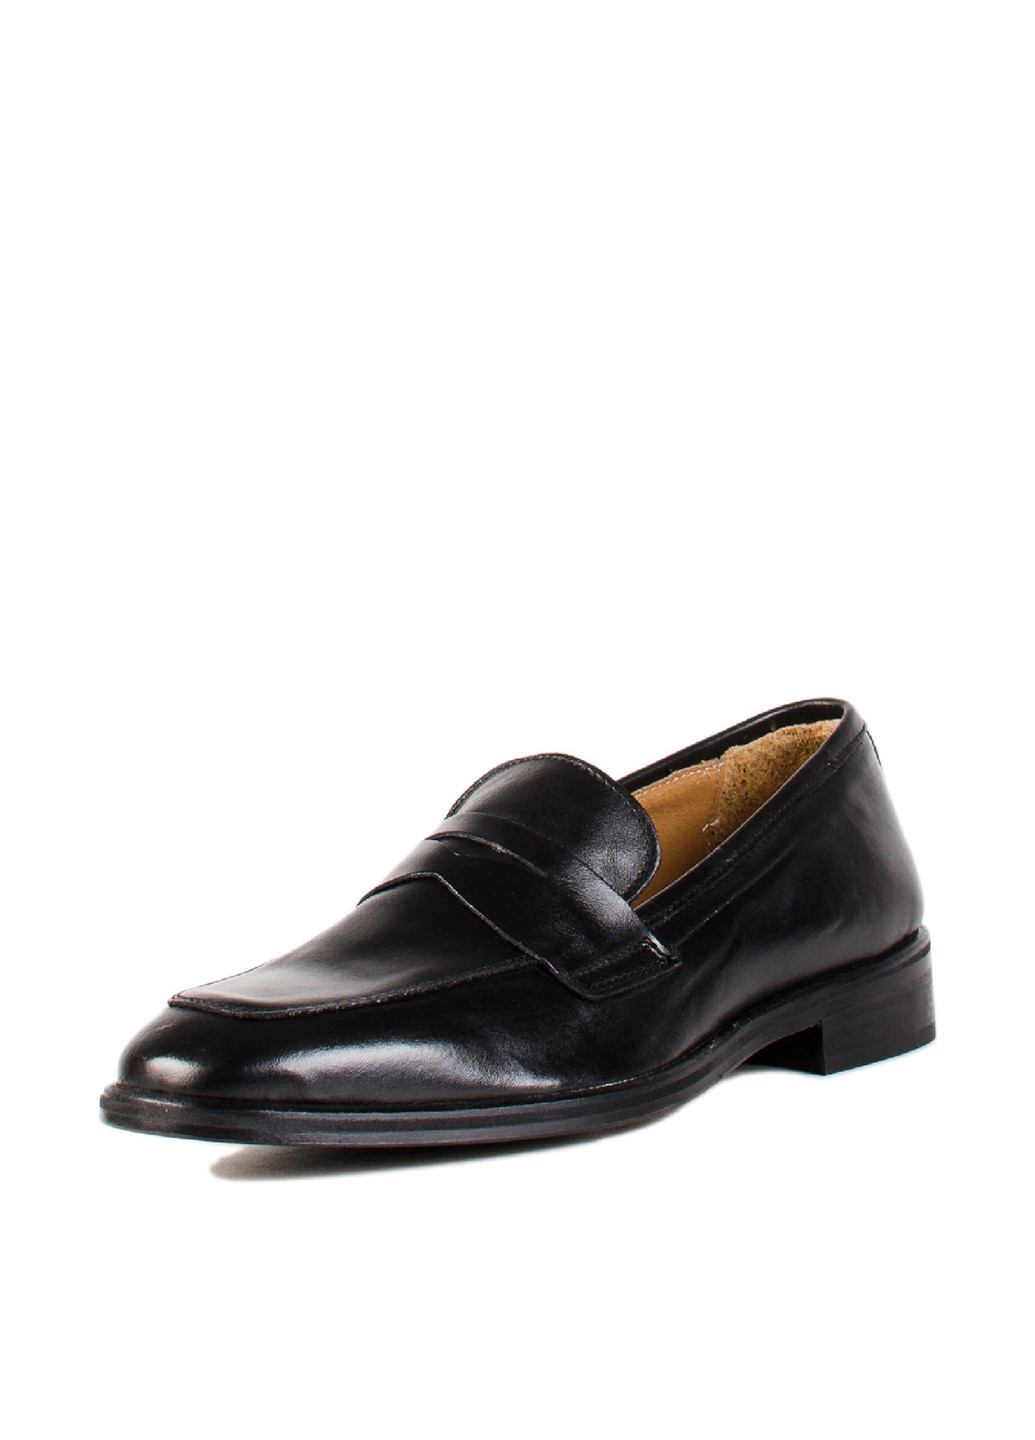 Черные классические туфли Carlo Pazolini без шнурков